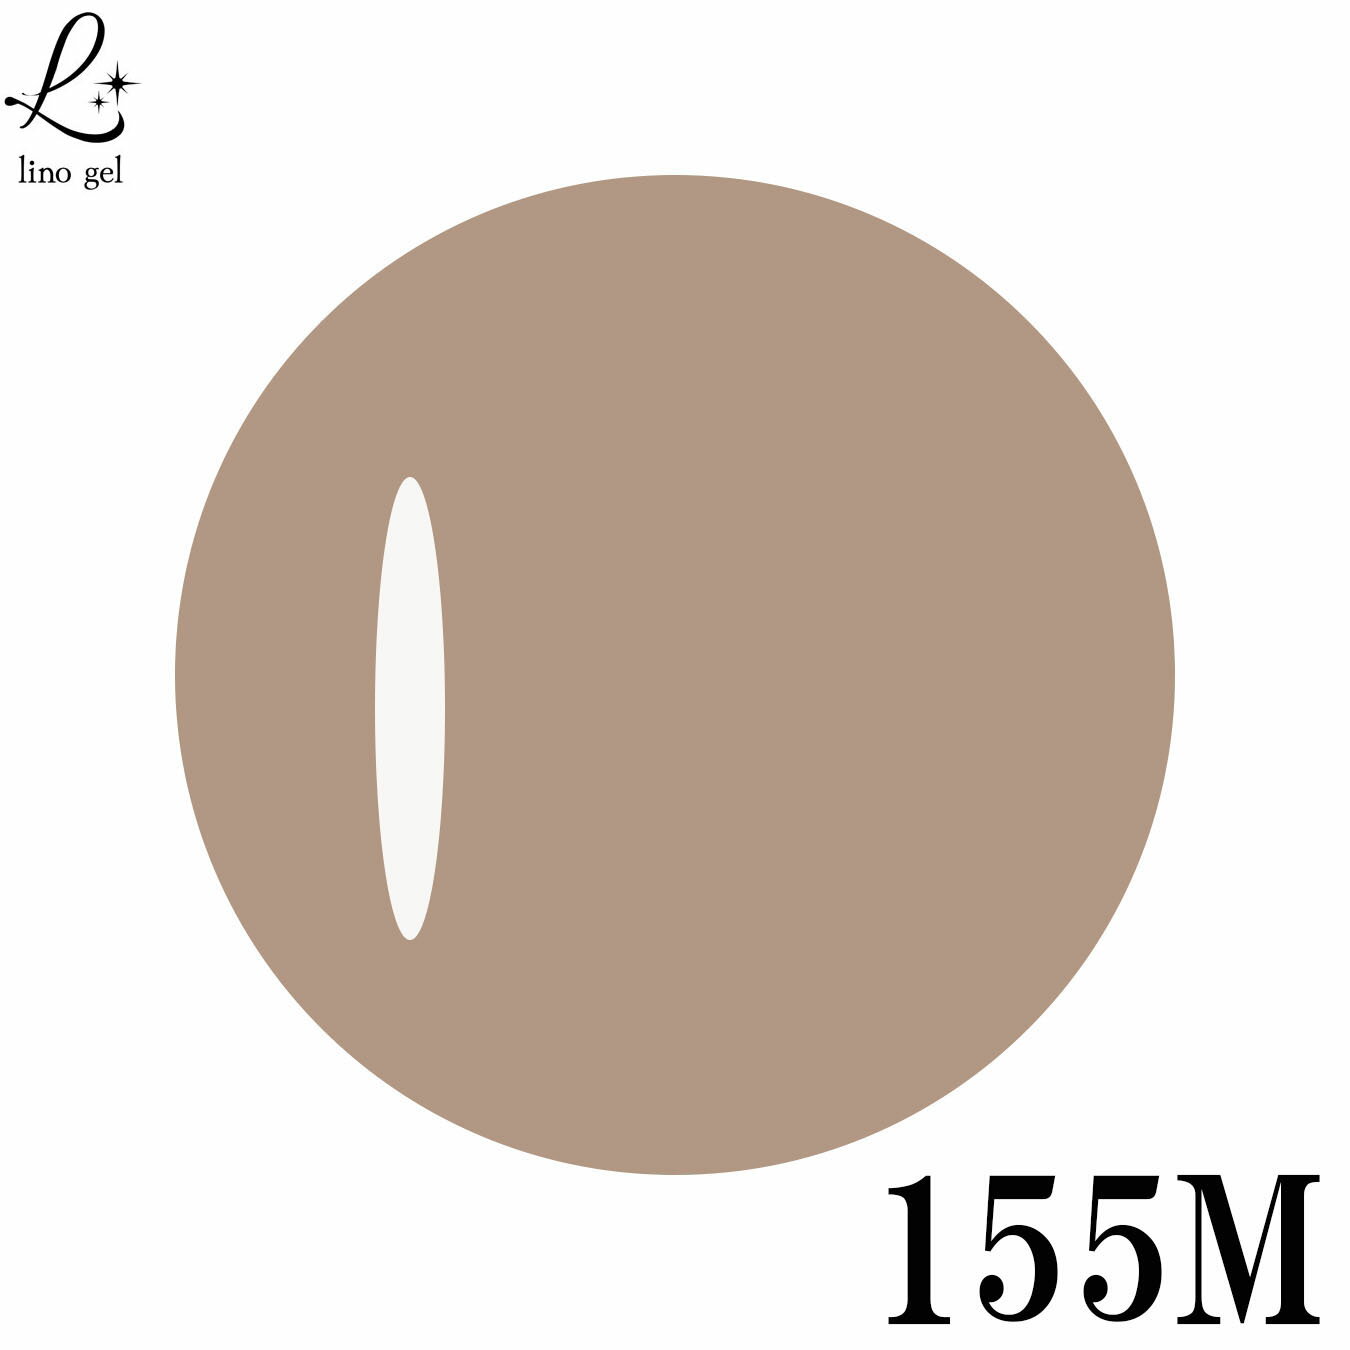 LinoGel リノジェル カラージェル 5g LED/UVライト対応 155M カフェオレ cafe au lait プロフェショナル ジェルネイル カラー ネイル ジェルネイルカラー ネイルアート 薄くくすんだ鈍い橙系の色 茶色 ブラウン系